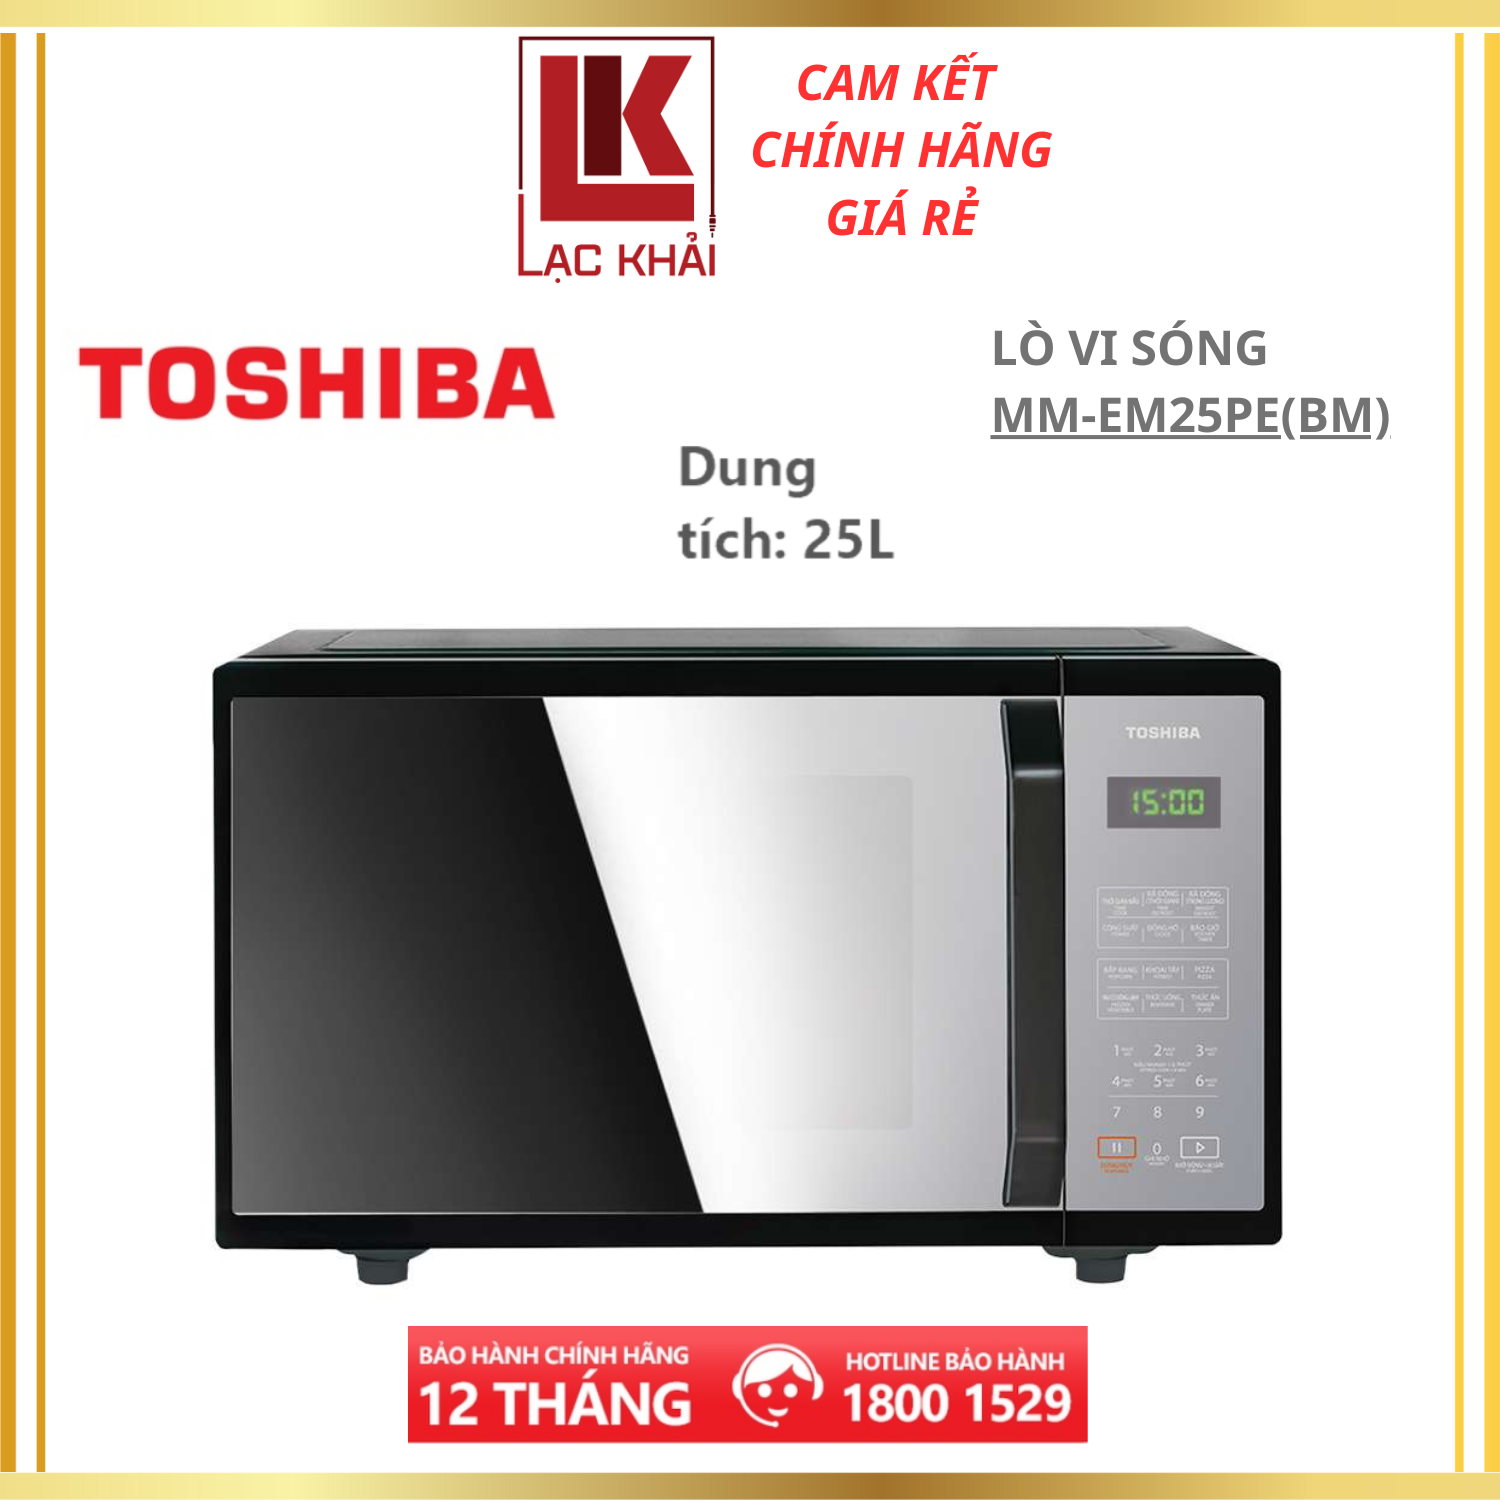 Lò vi sóng mặt gương Toshiba 25 lít MM-EM25PE(BM) - Công suất 800W - 11 mức công suất, Thực đơn tự động - Hàng chính hãng - Bảo hành 12 tháng chính hãng, chất lượng Nhật Bản